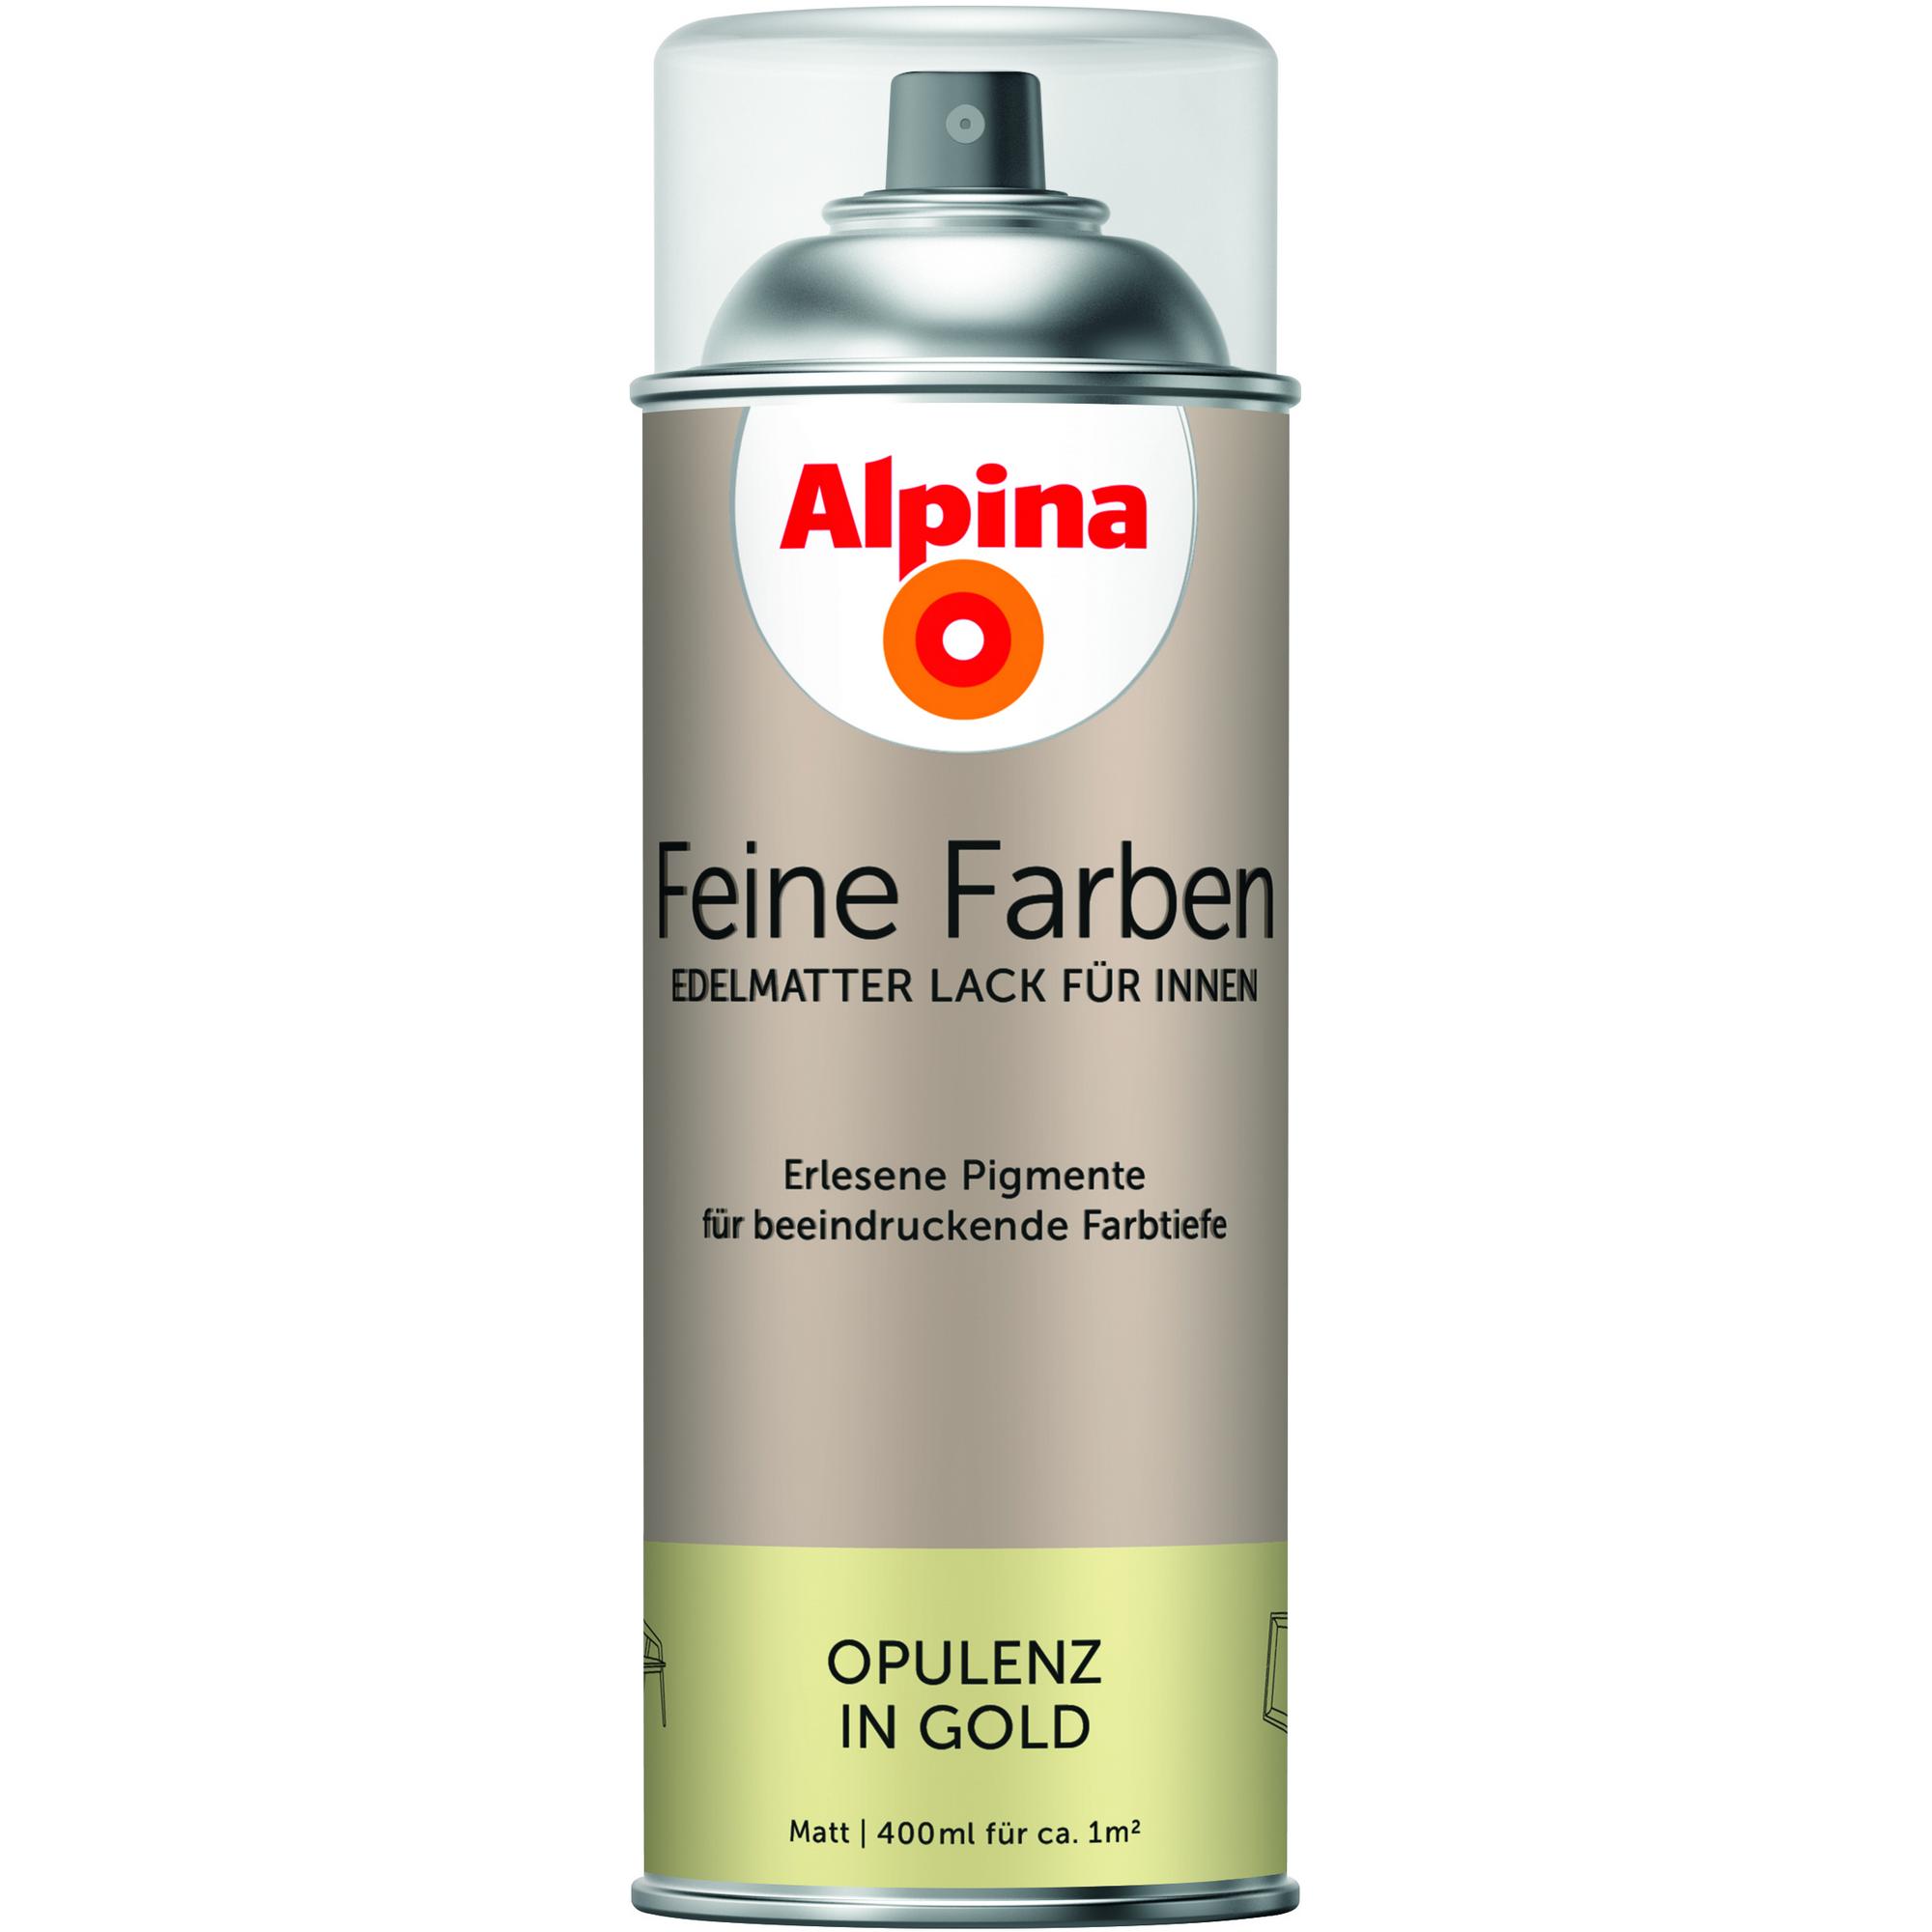 Feine Farben 'Opulenz in Gold' gold matt 400 ml + product picture